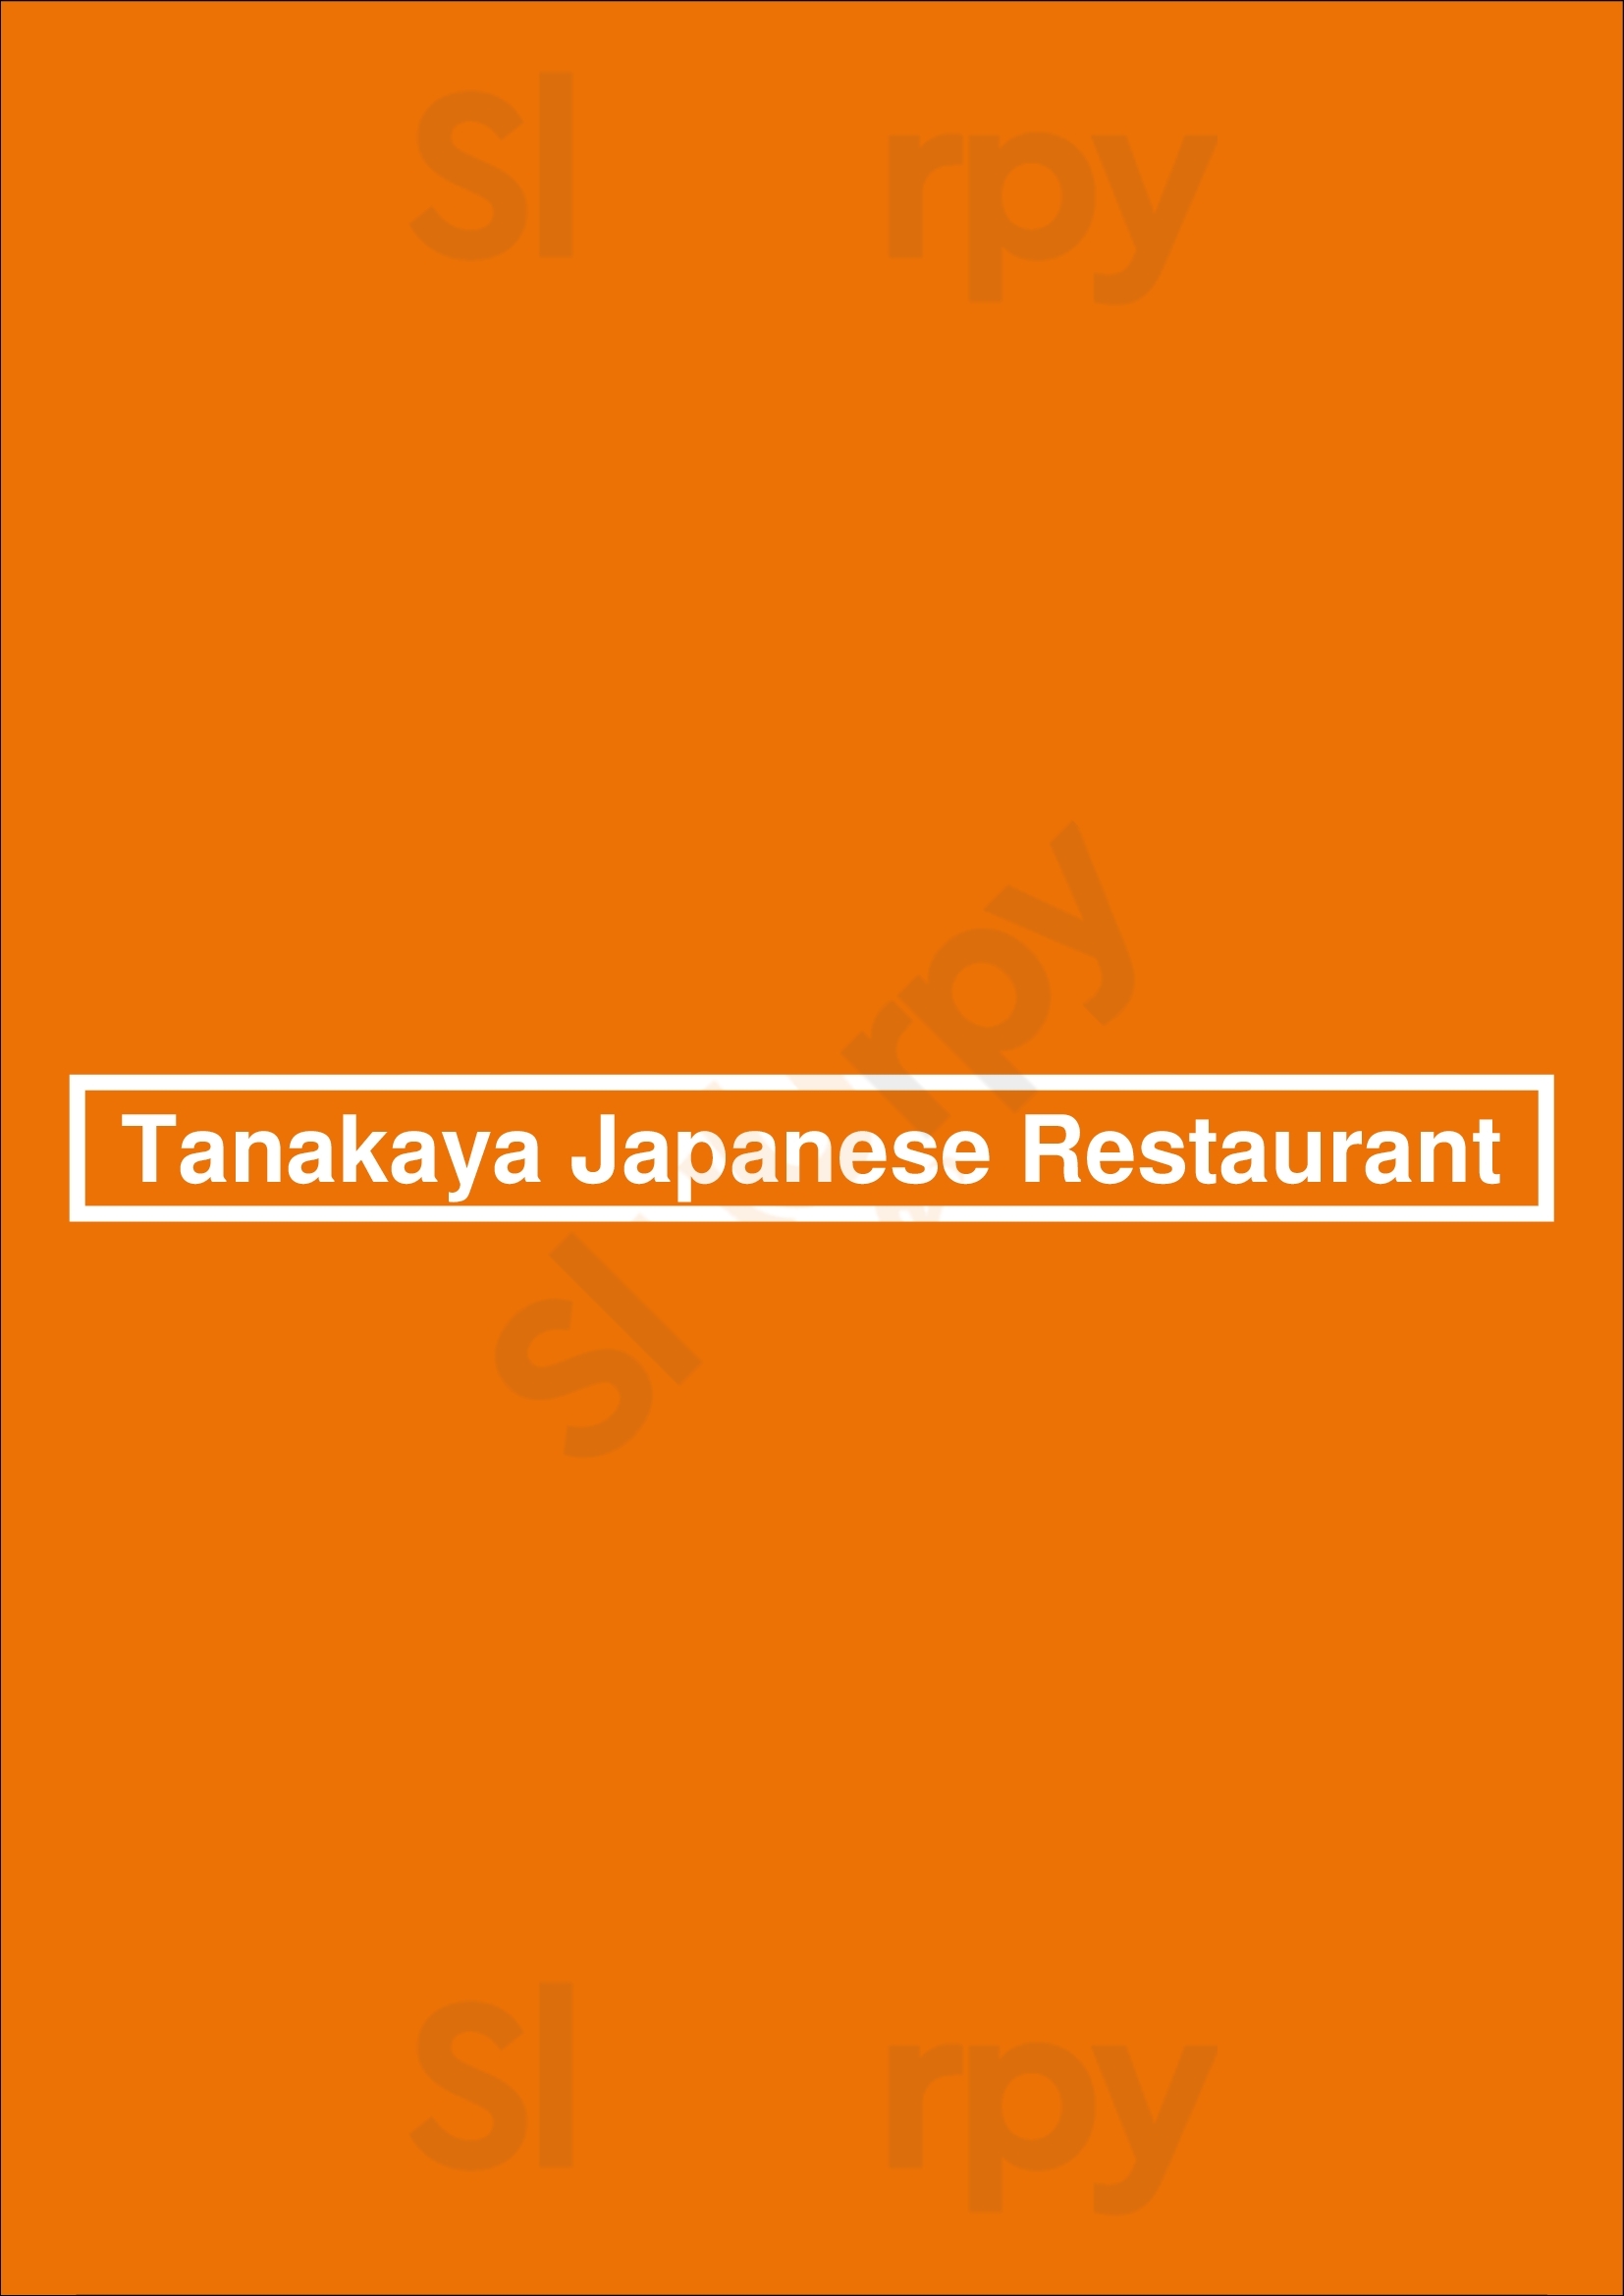 Tanakaya Japanese Restaurant London Menu - 1